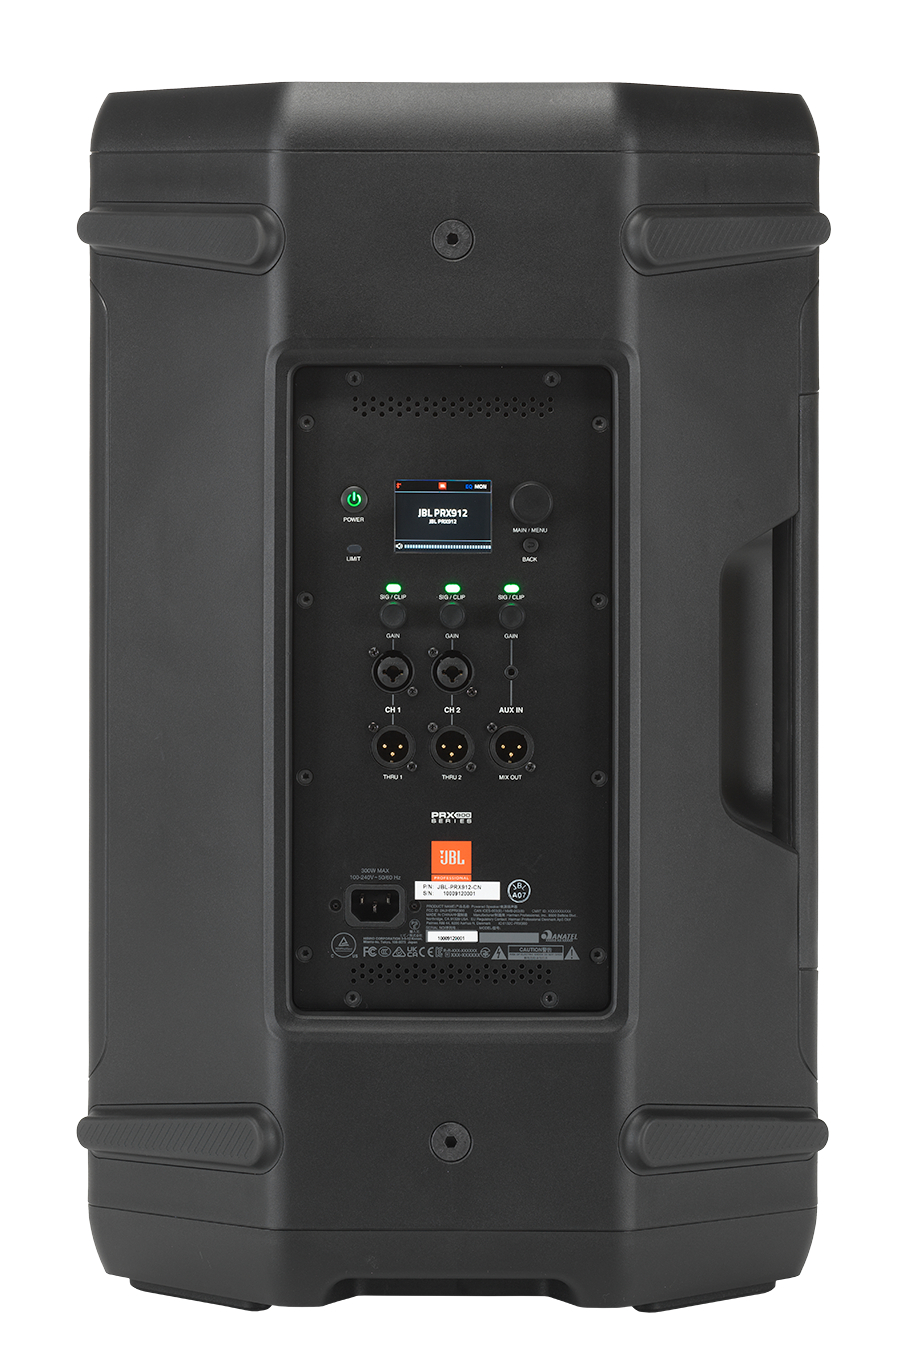 Jbl Prx 912 - Active full-range speaker - Variation 4